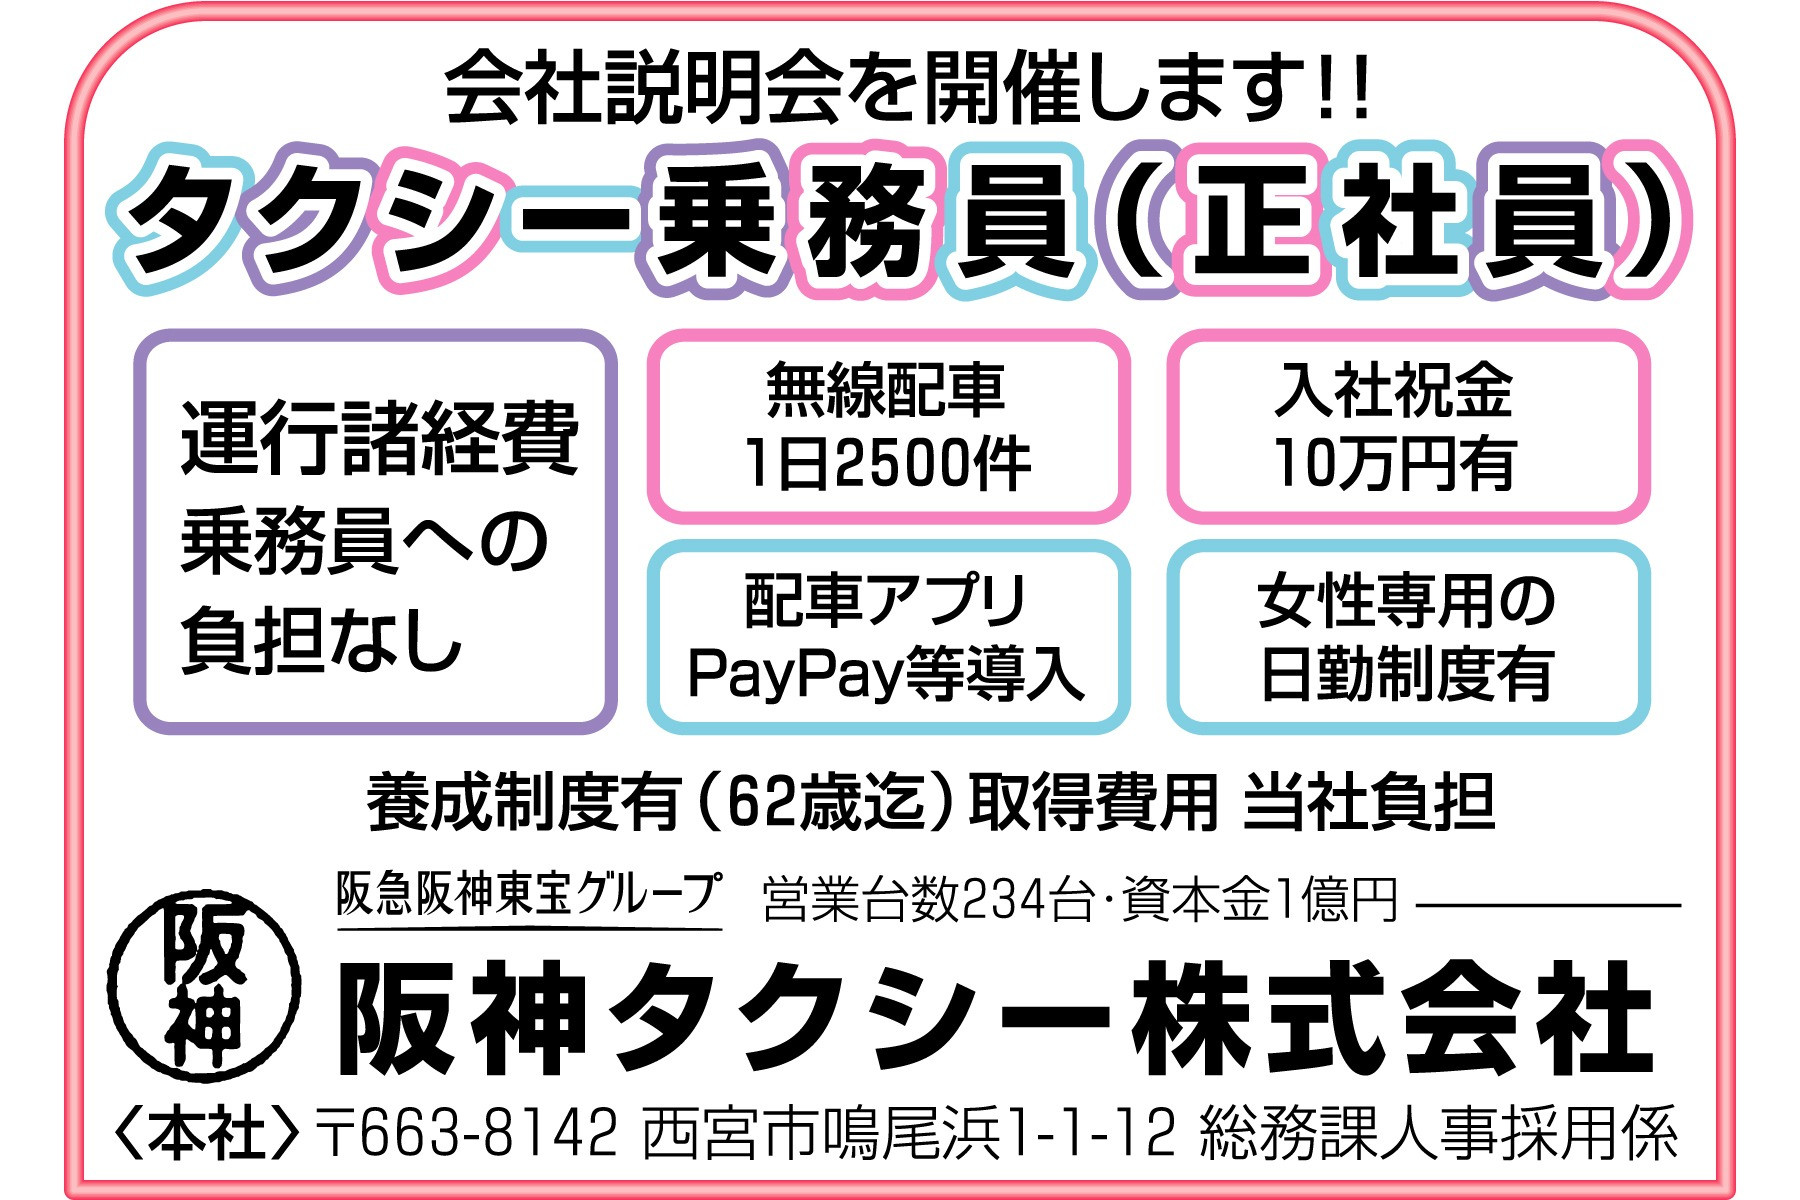 阪神タクシー乗務員-入社祝金有-40代、50代、60代歓迎!!